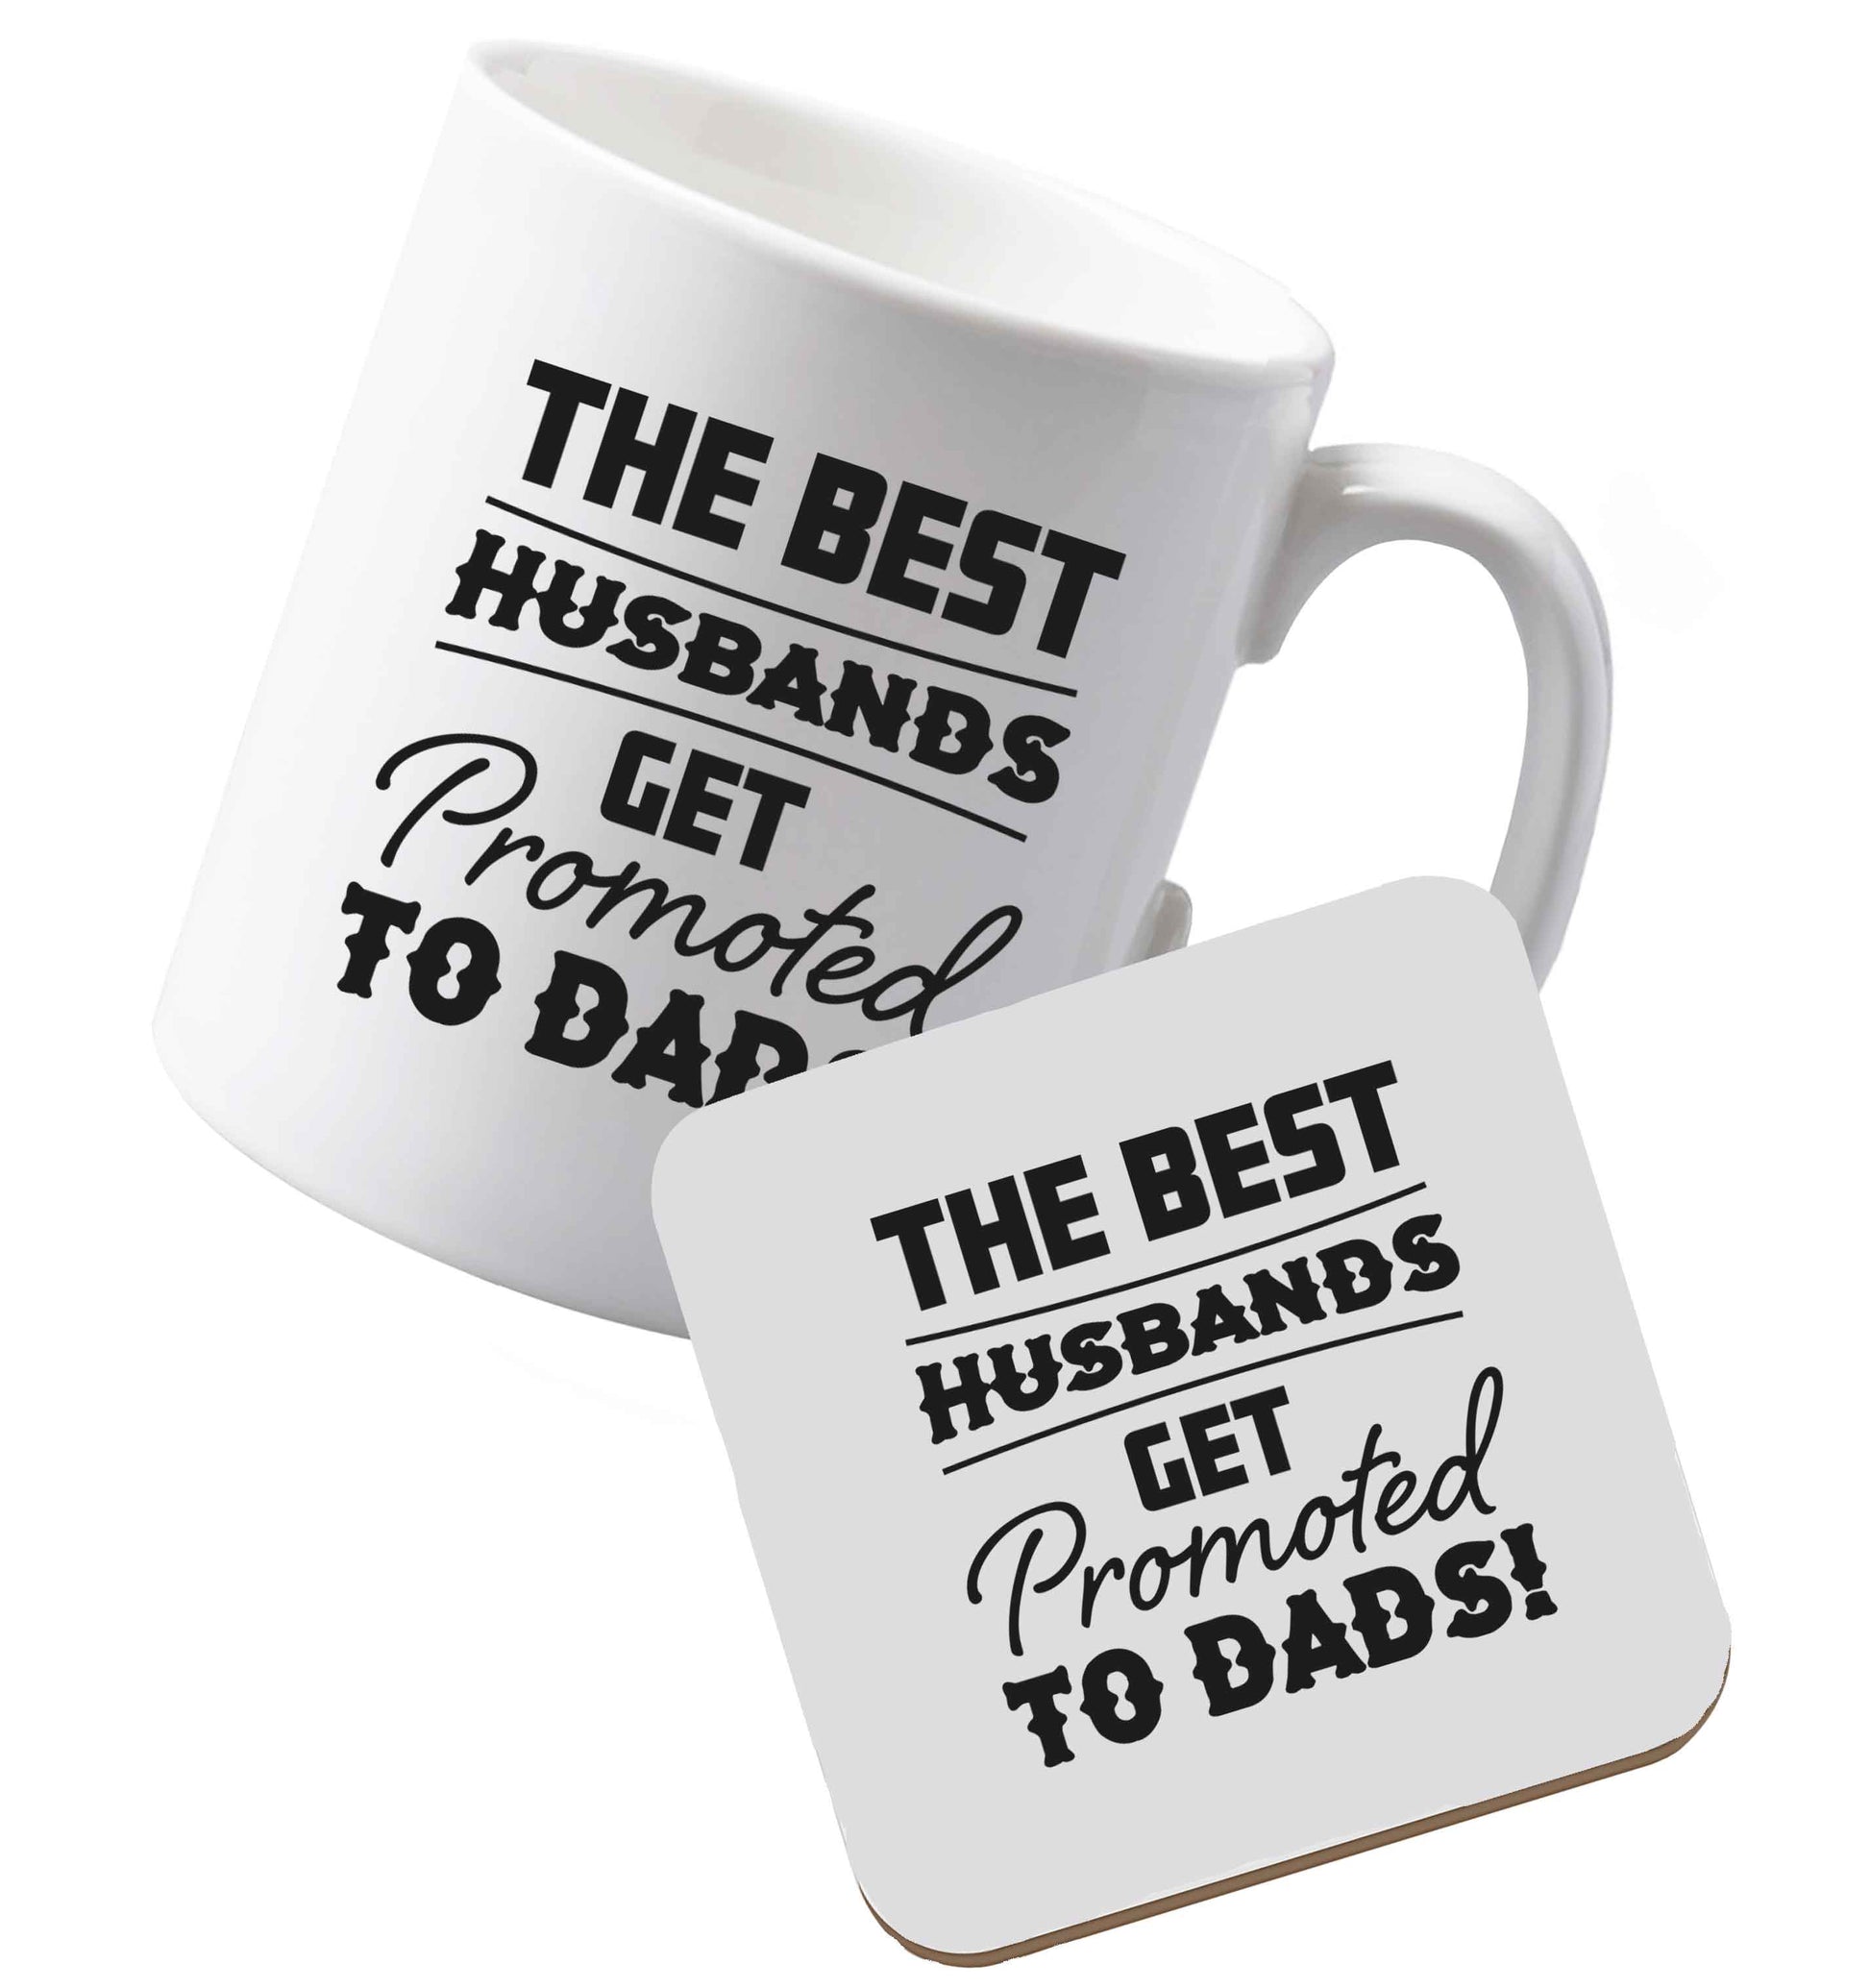 10 oz Ceramic mug and coaster The best husbands get promoted to Dads both sides